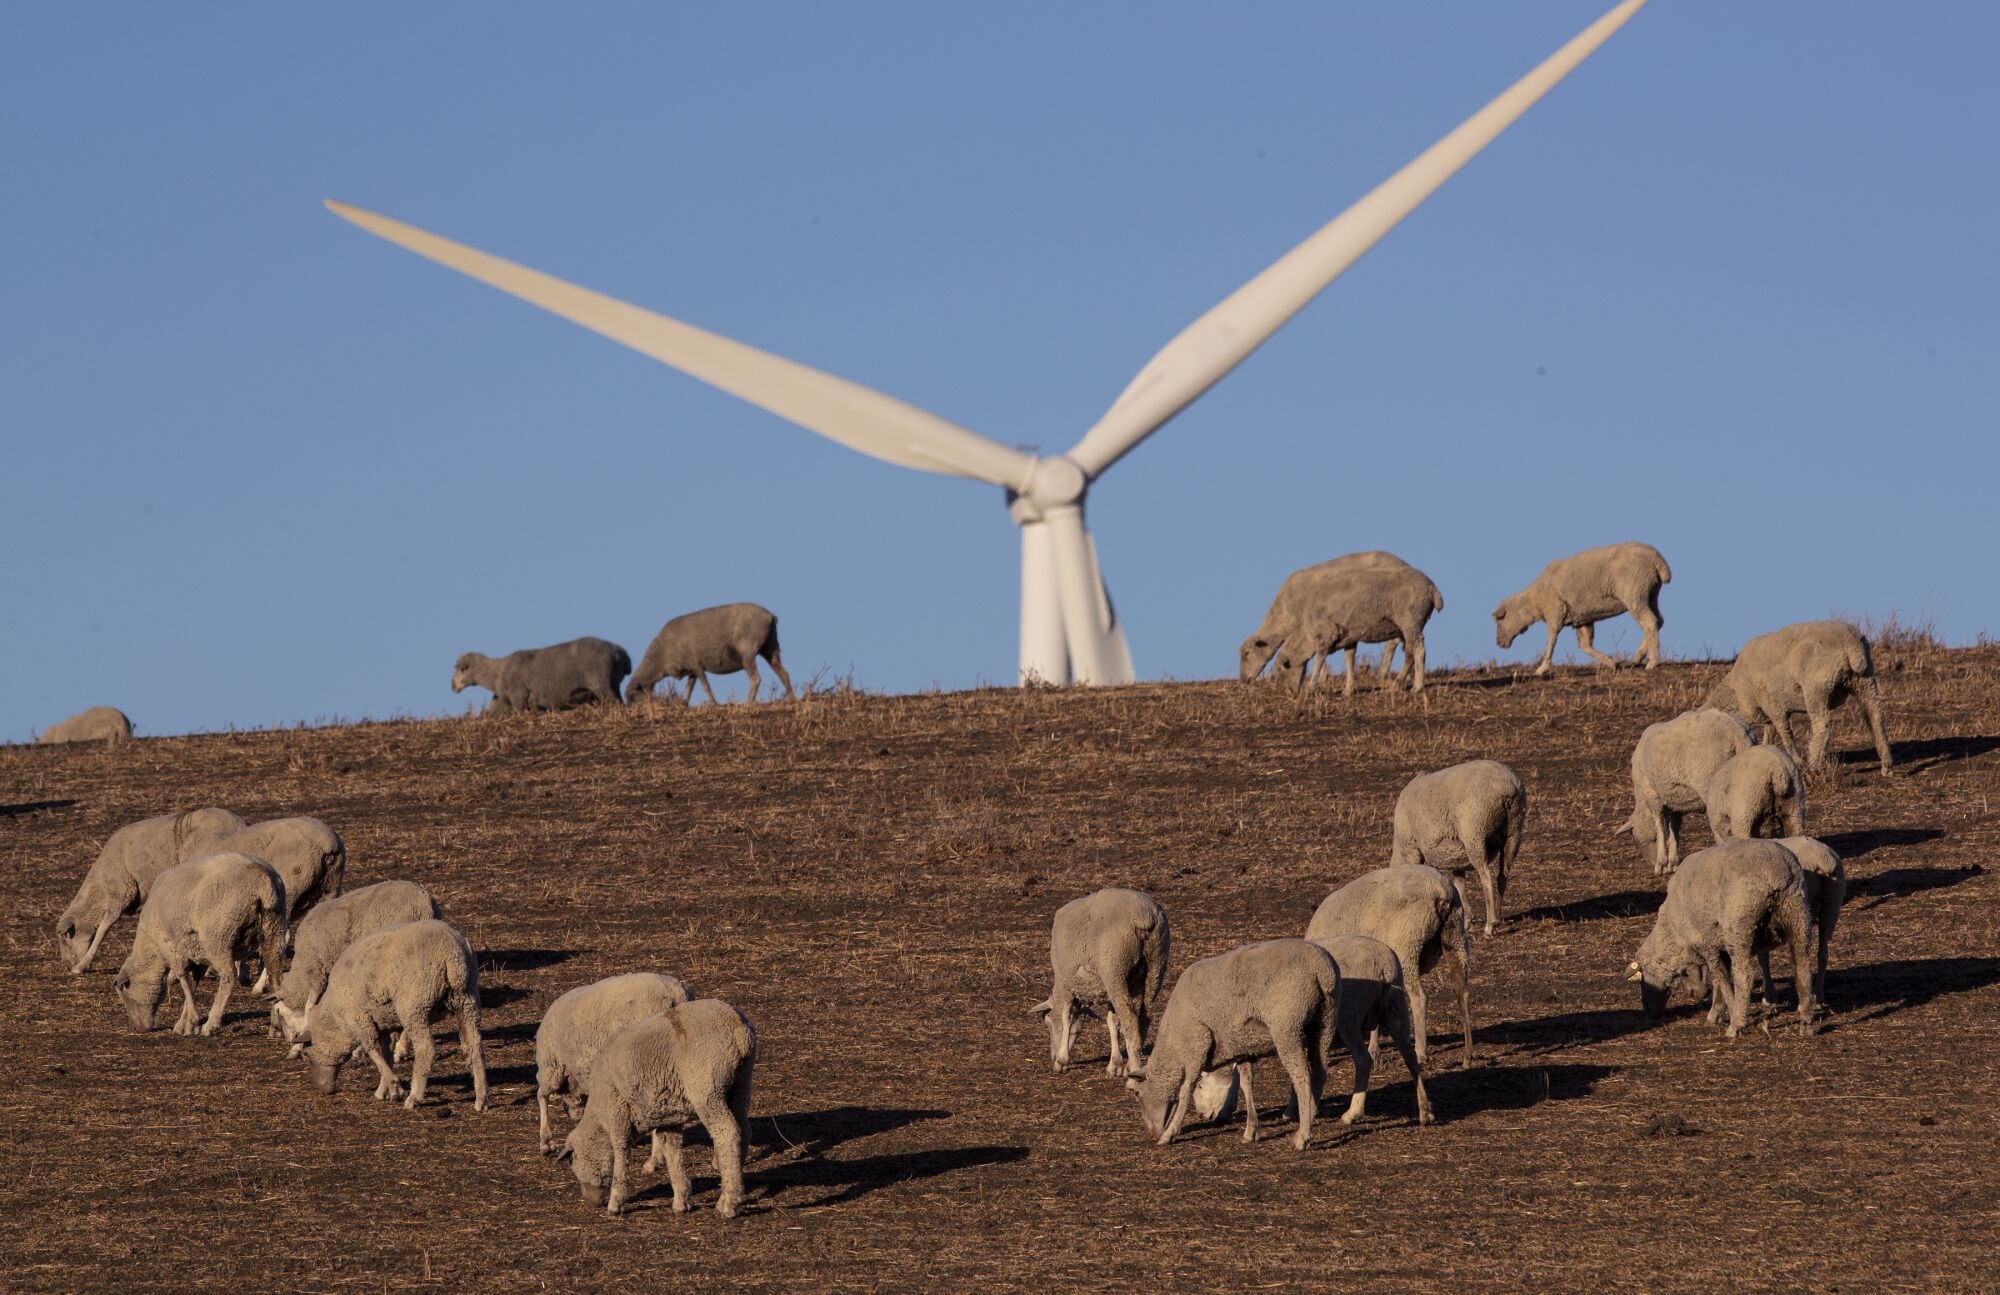 Sheep near a wind turbine.